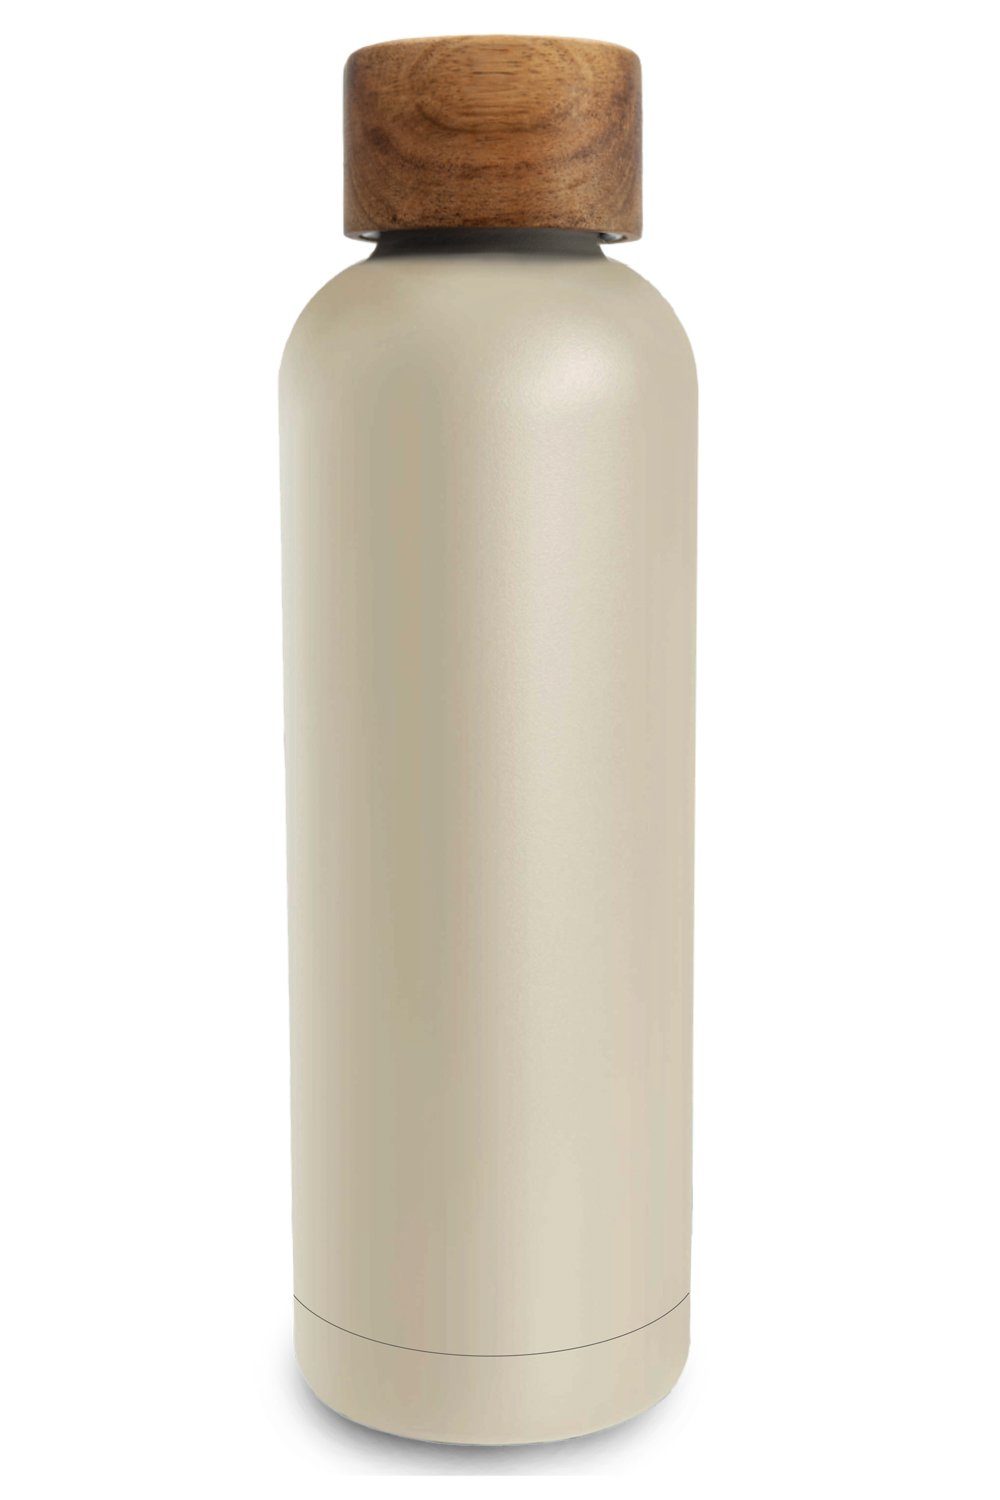 TRENDY AND NEW Trinkflasche T&N Edelstahl Trinkflasche 500ml - Wood Edition, Thermosflasche 500 ml für Büro, auslaufsichere, robuste, isolierte Wasserflasche 0,5l für Kohlensäure, Thermoskanne 500ml für unterwegs, Isolierflasche für Tee & Kaffee, hält 14h HEISS 29h EISKALT, Flasche für Sprudel-Wasser Mud Grey